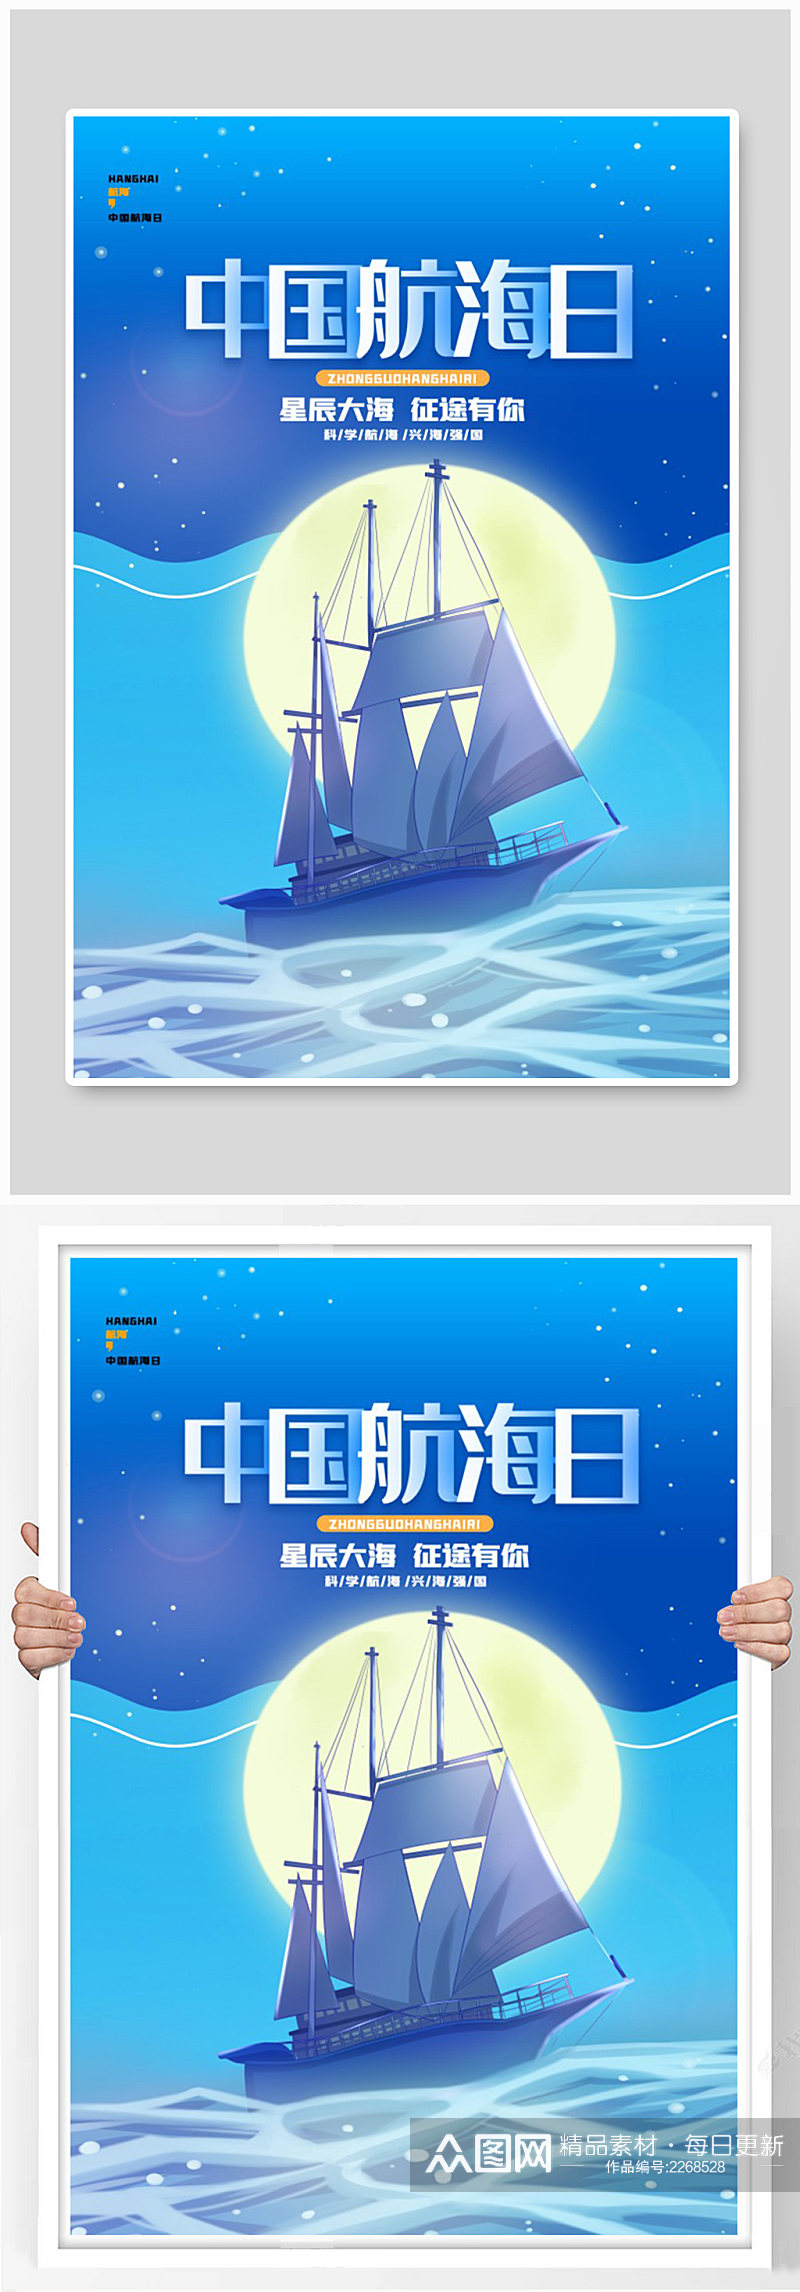 中国航海日节日宣传海报素材